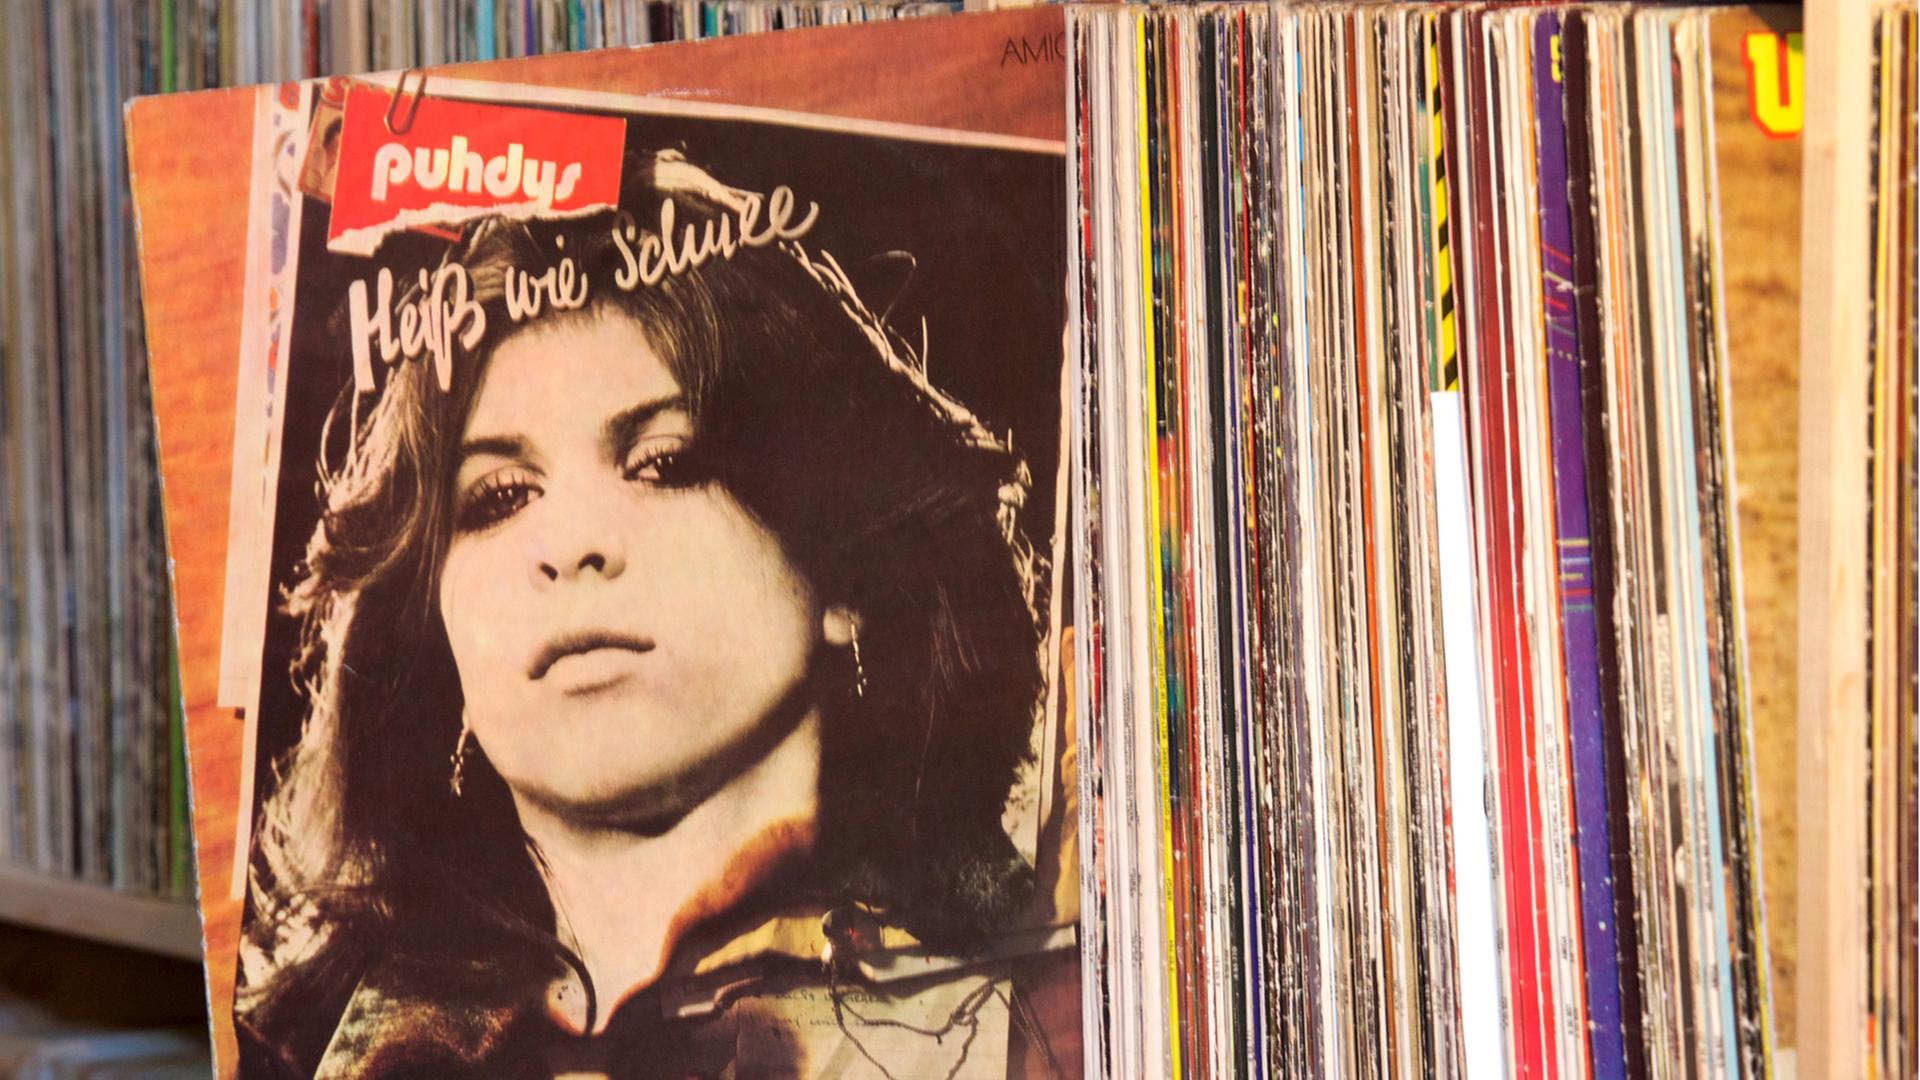 Aus einem Regal mit zahlreichen Schallplatten wurde die LP "Heiß wie Schnee" von den Puhdys herausgezogen. Auf dem Cover ist das Porträt einer Frau zu sehen.